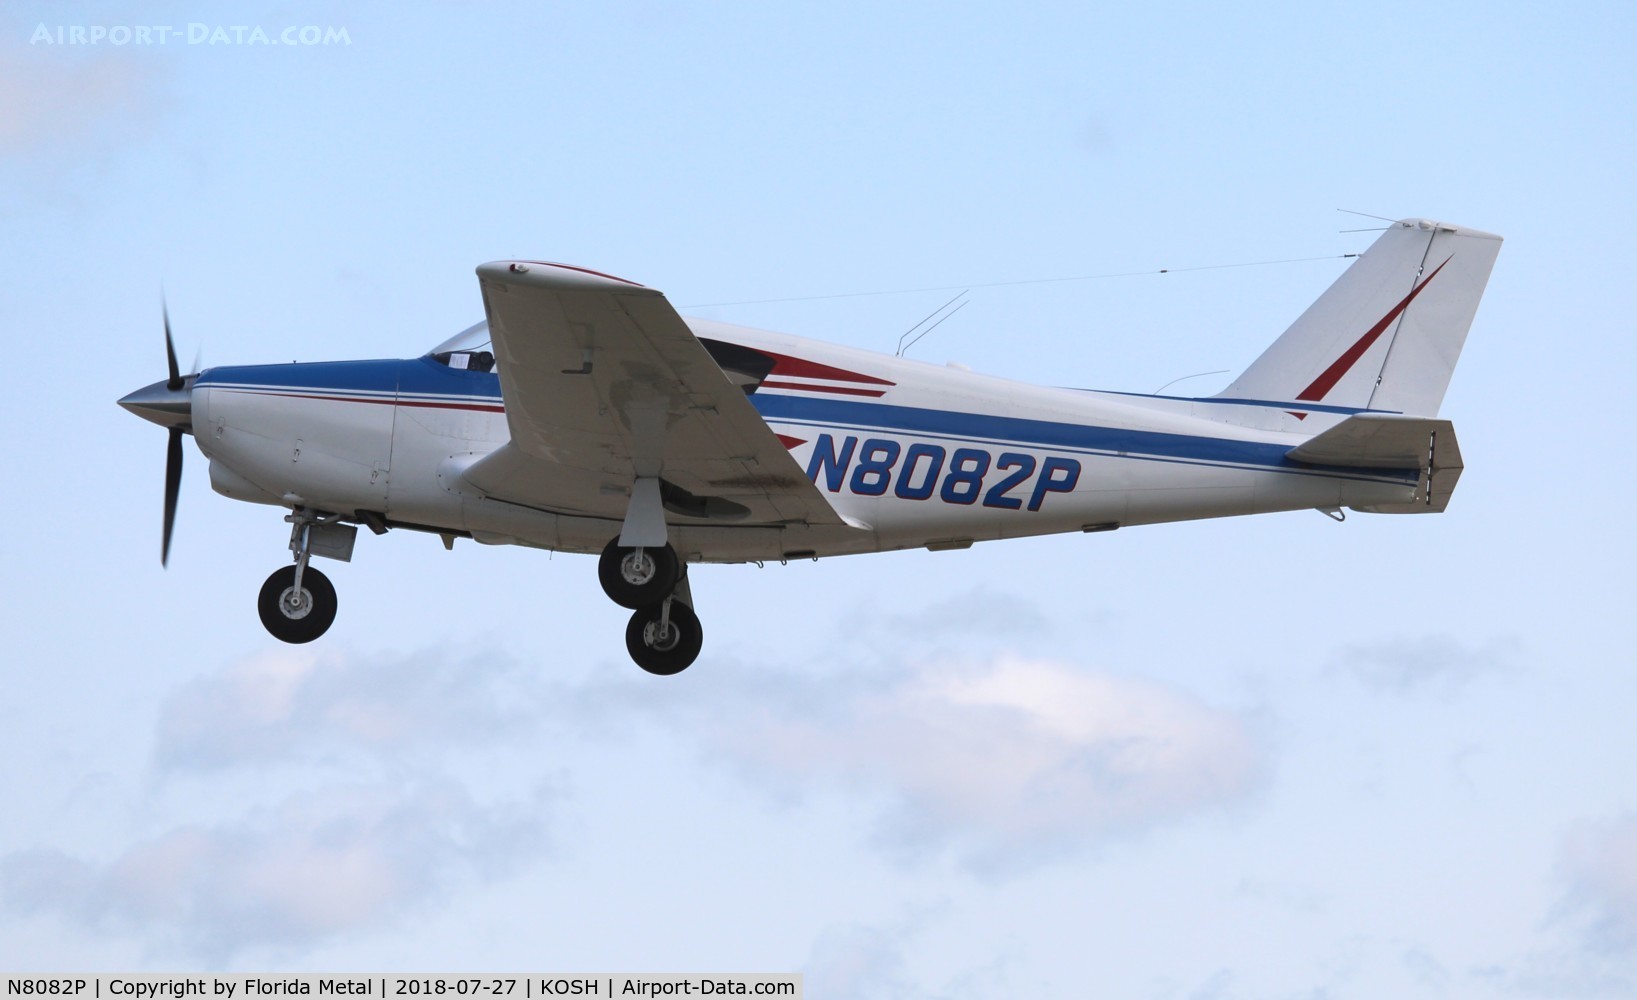 N8082P, 1962 Piper PA-24-250 Comanche C/N 24-3330, PA-24